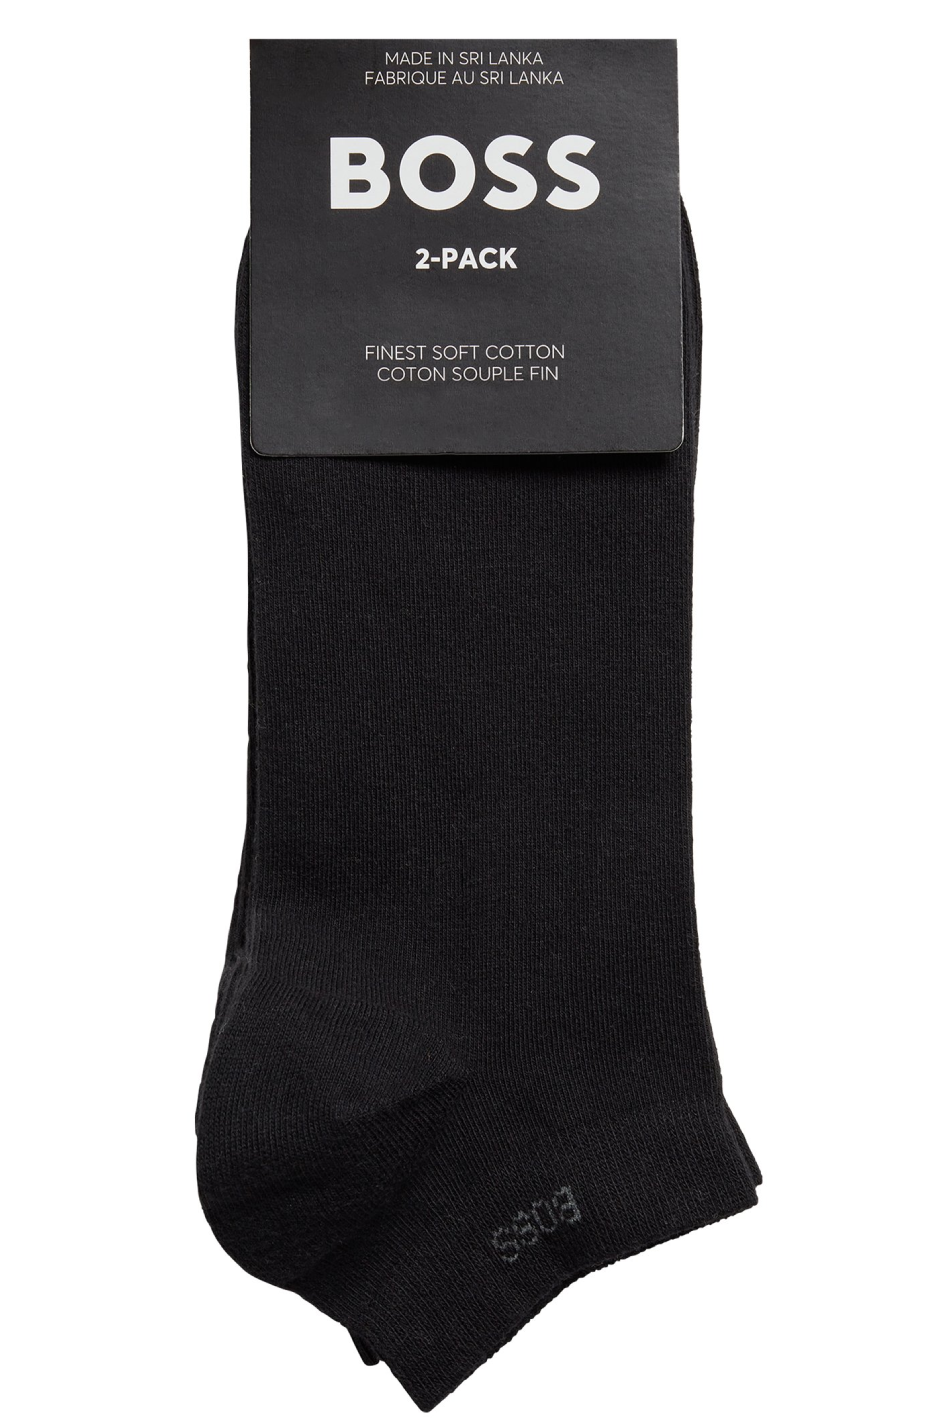 BOSS 2 Pack Essential Men's Socks